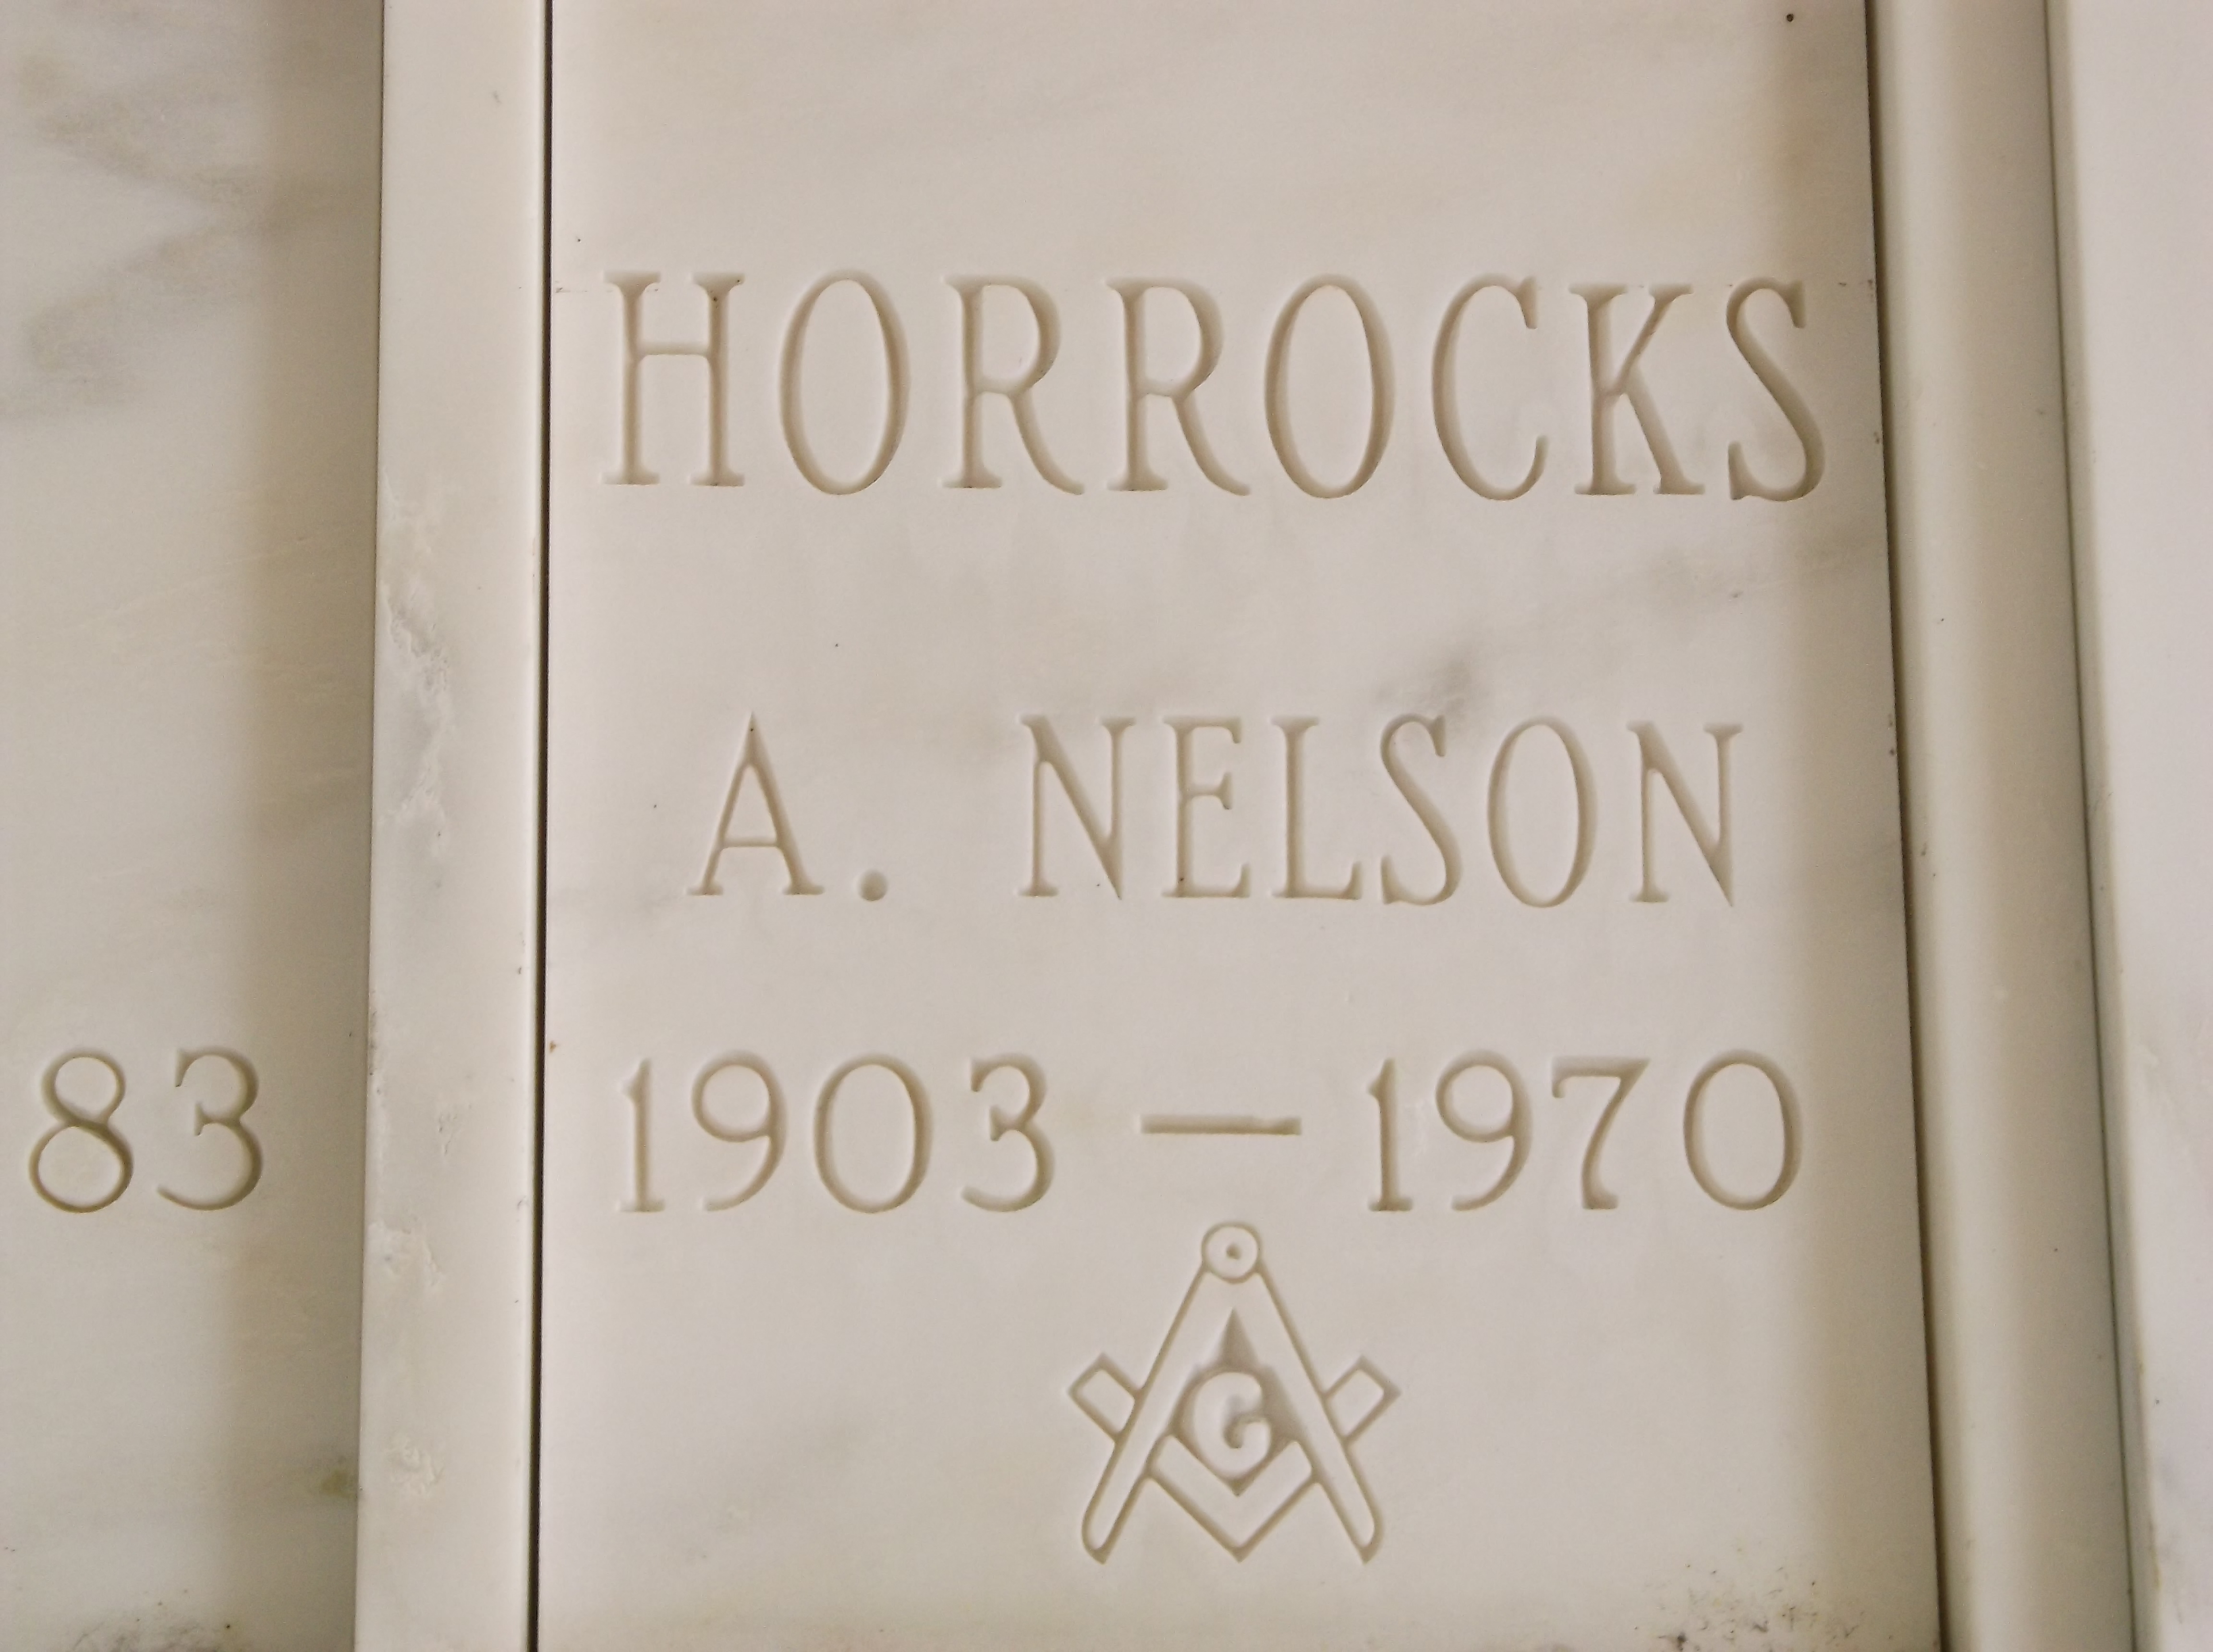 A Nelson Horrocks